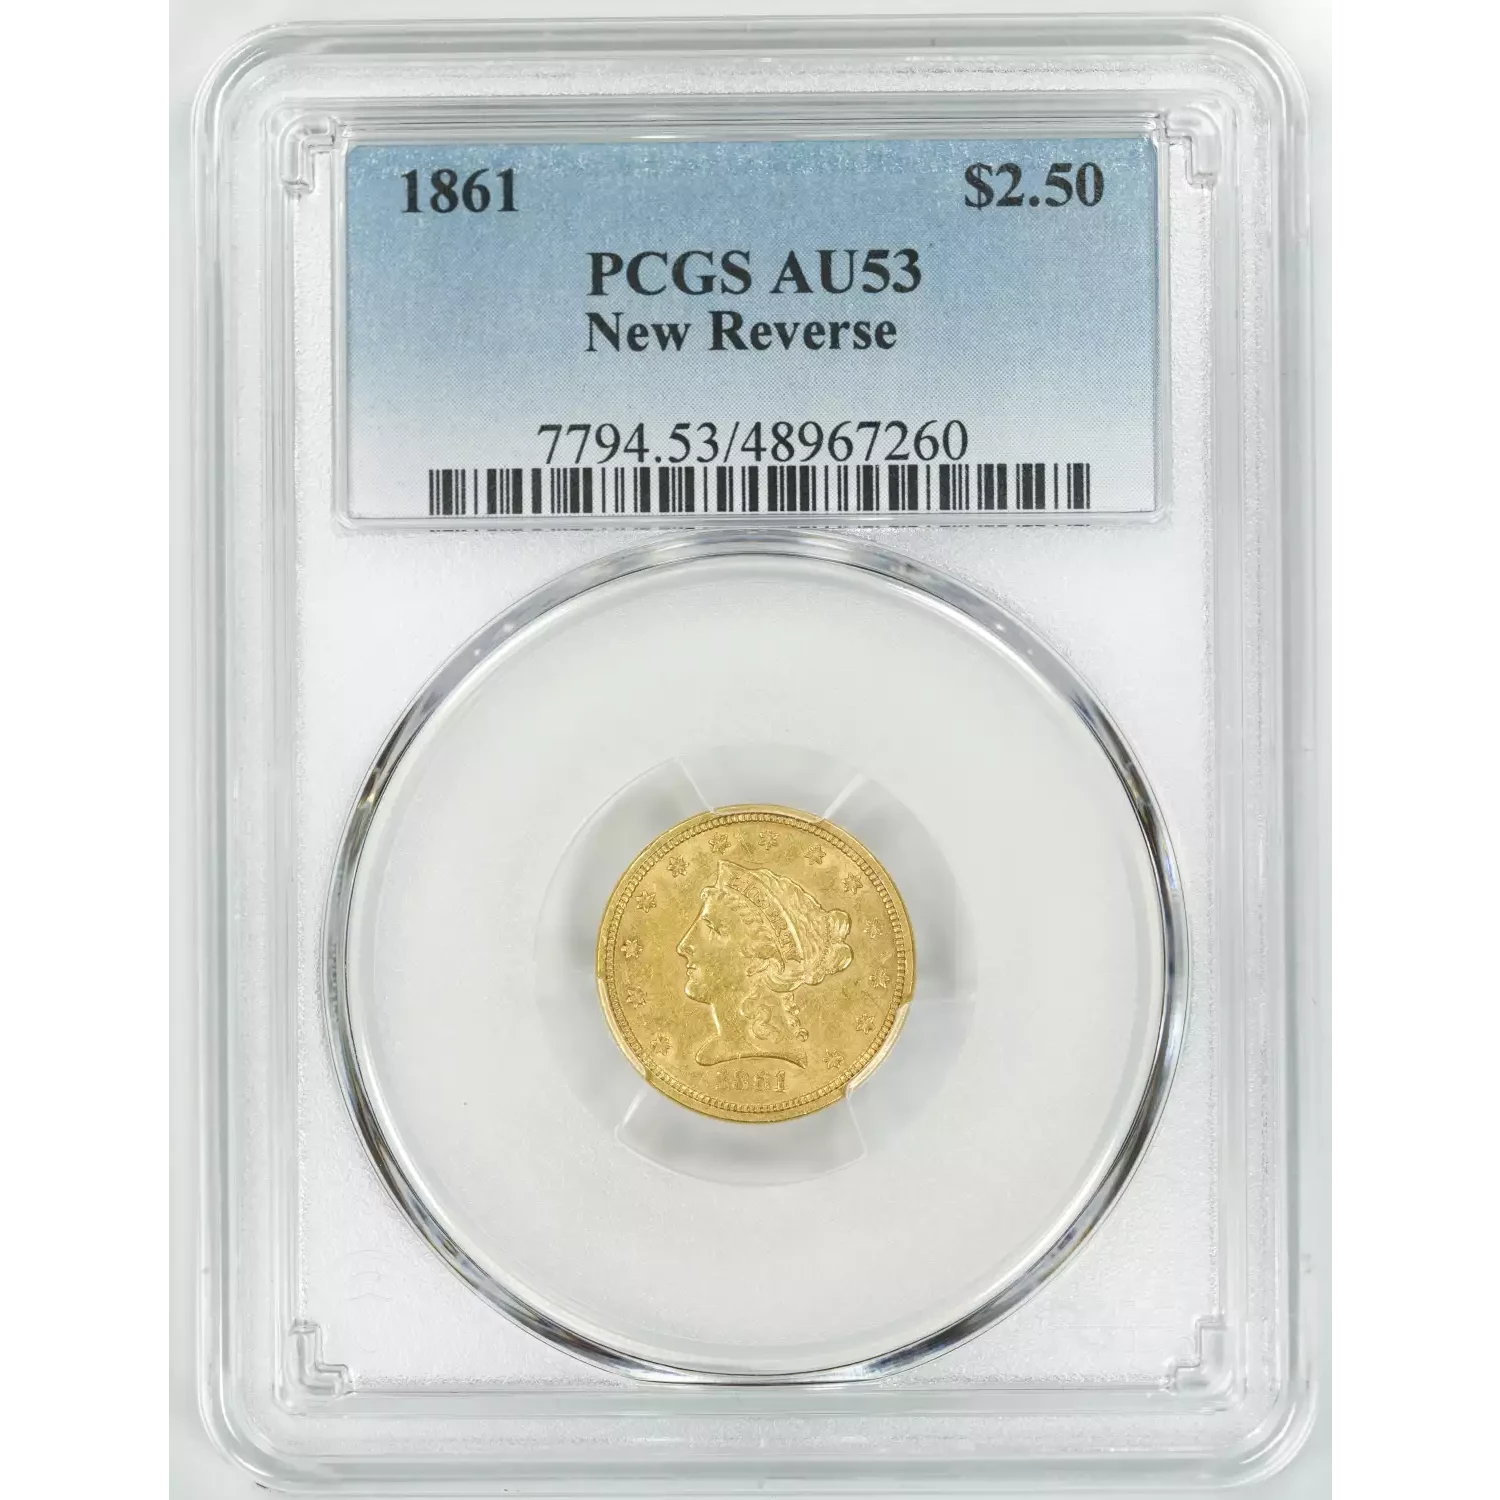 Quarter Eagles---Liberty Head 1840-1907 -Gold- 2.5 Dollar